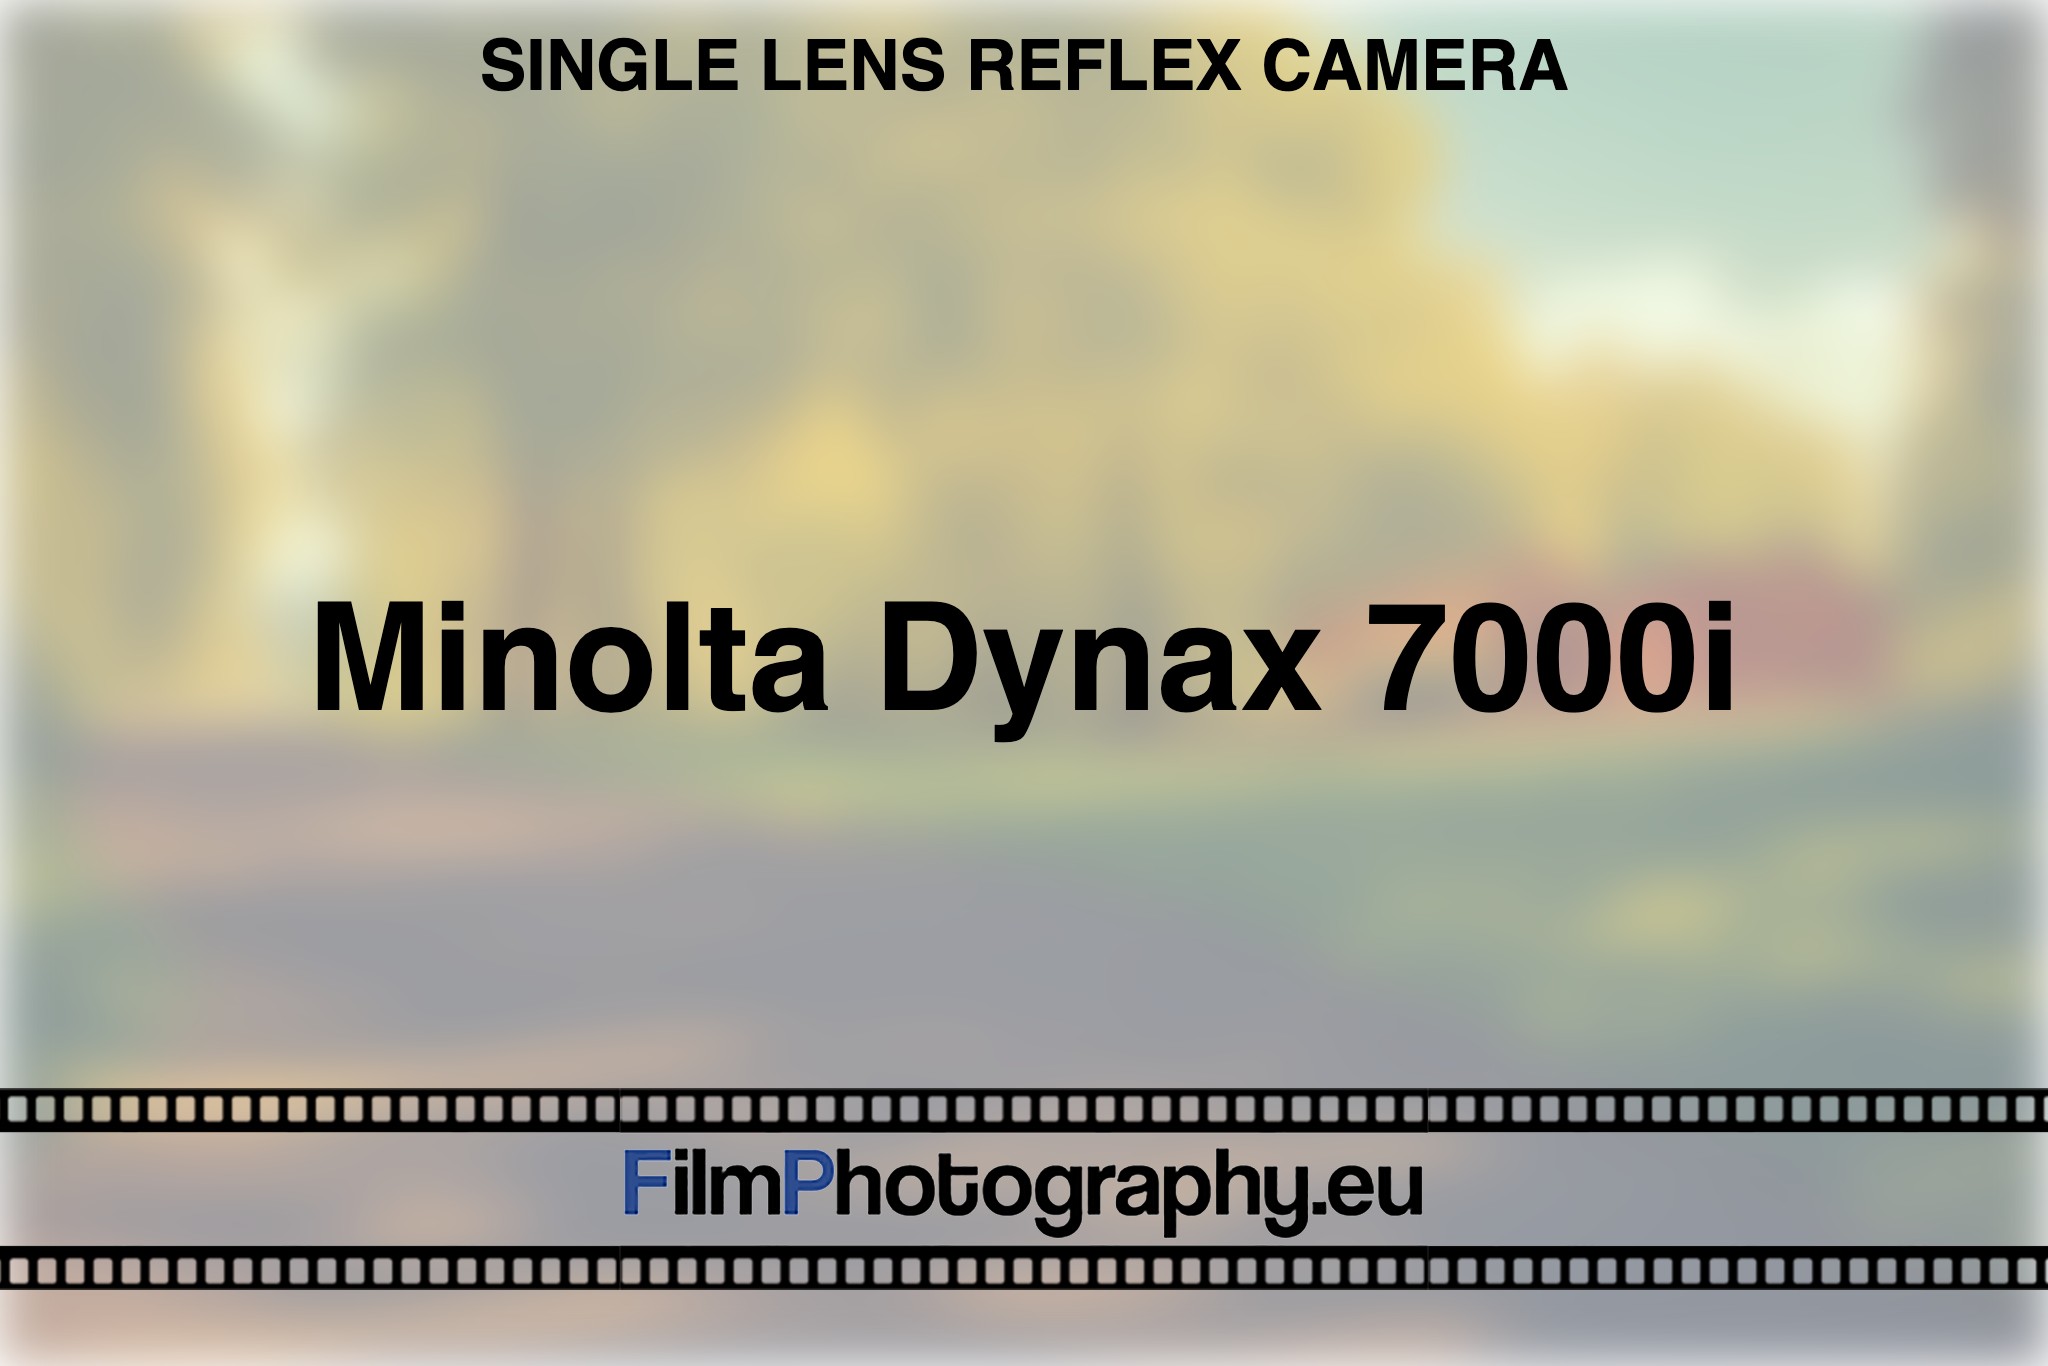 minolta-dynax-7000i-single-lens-reflex-camera-bnv